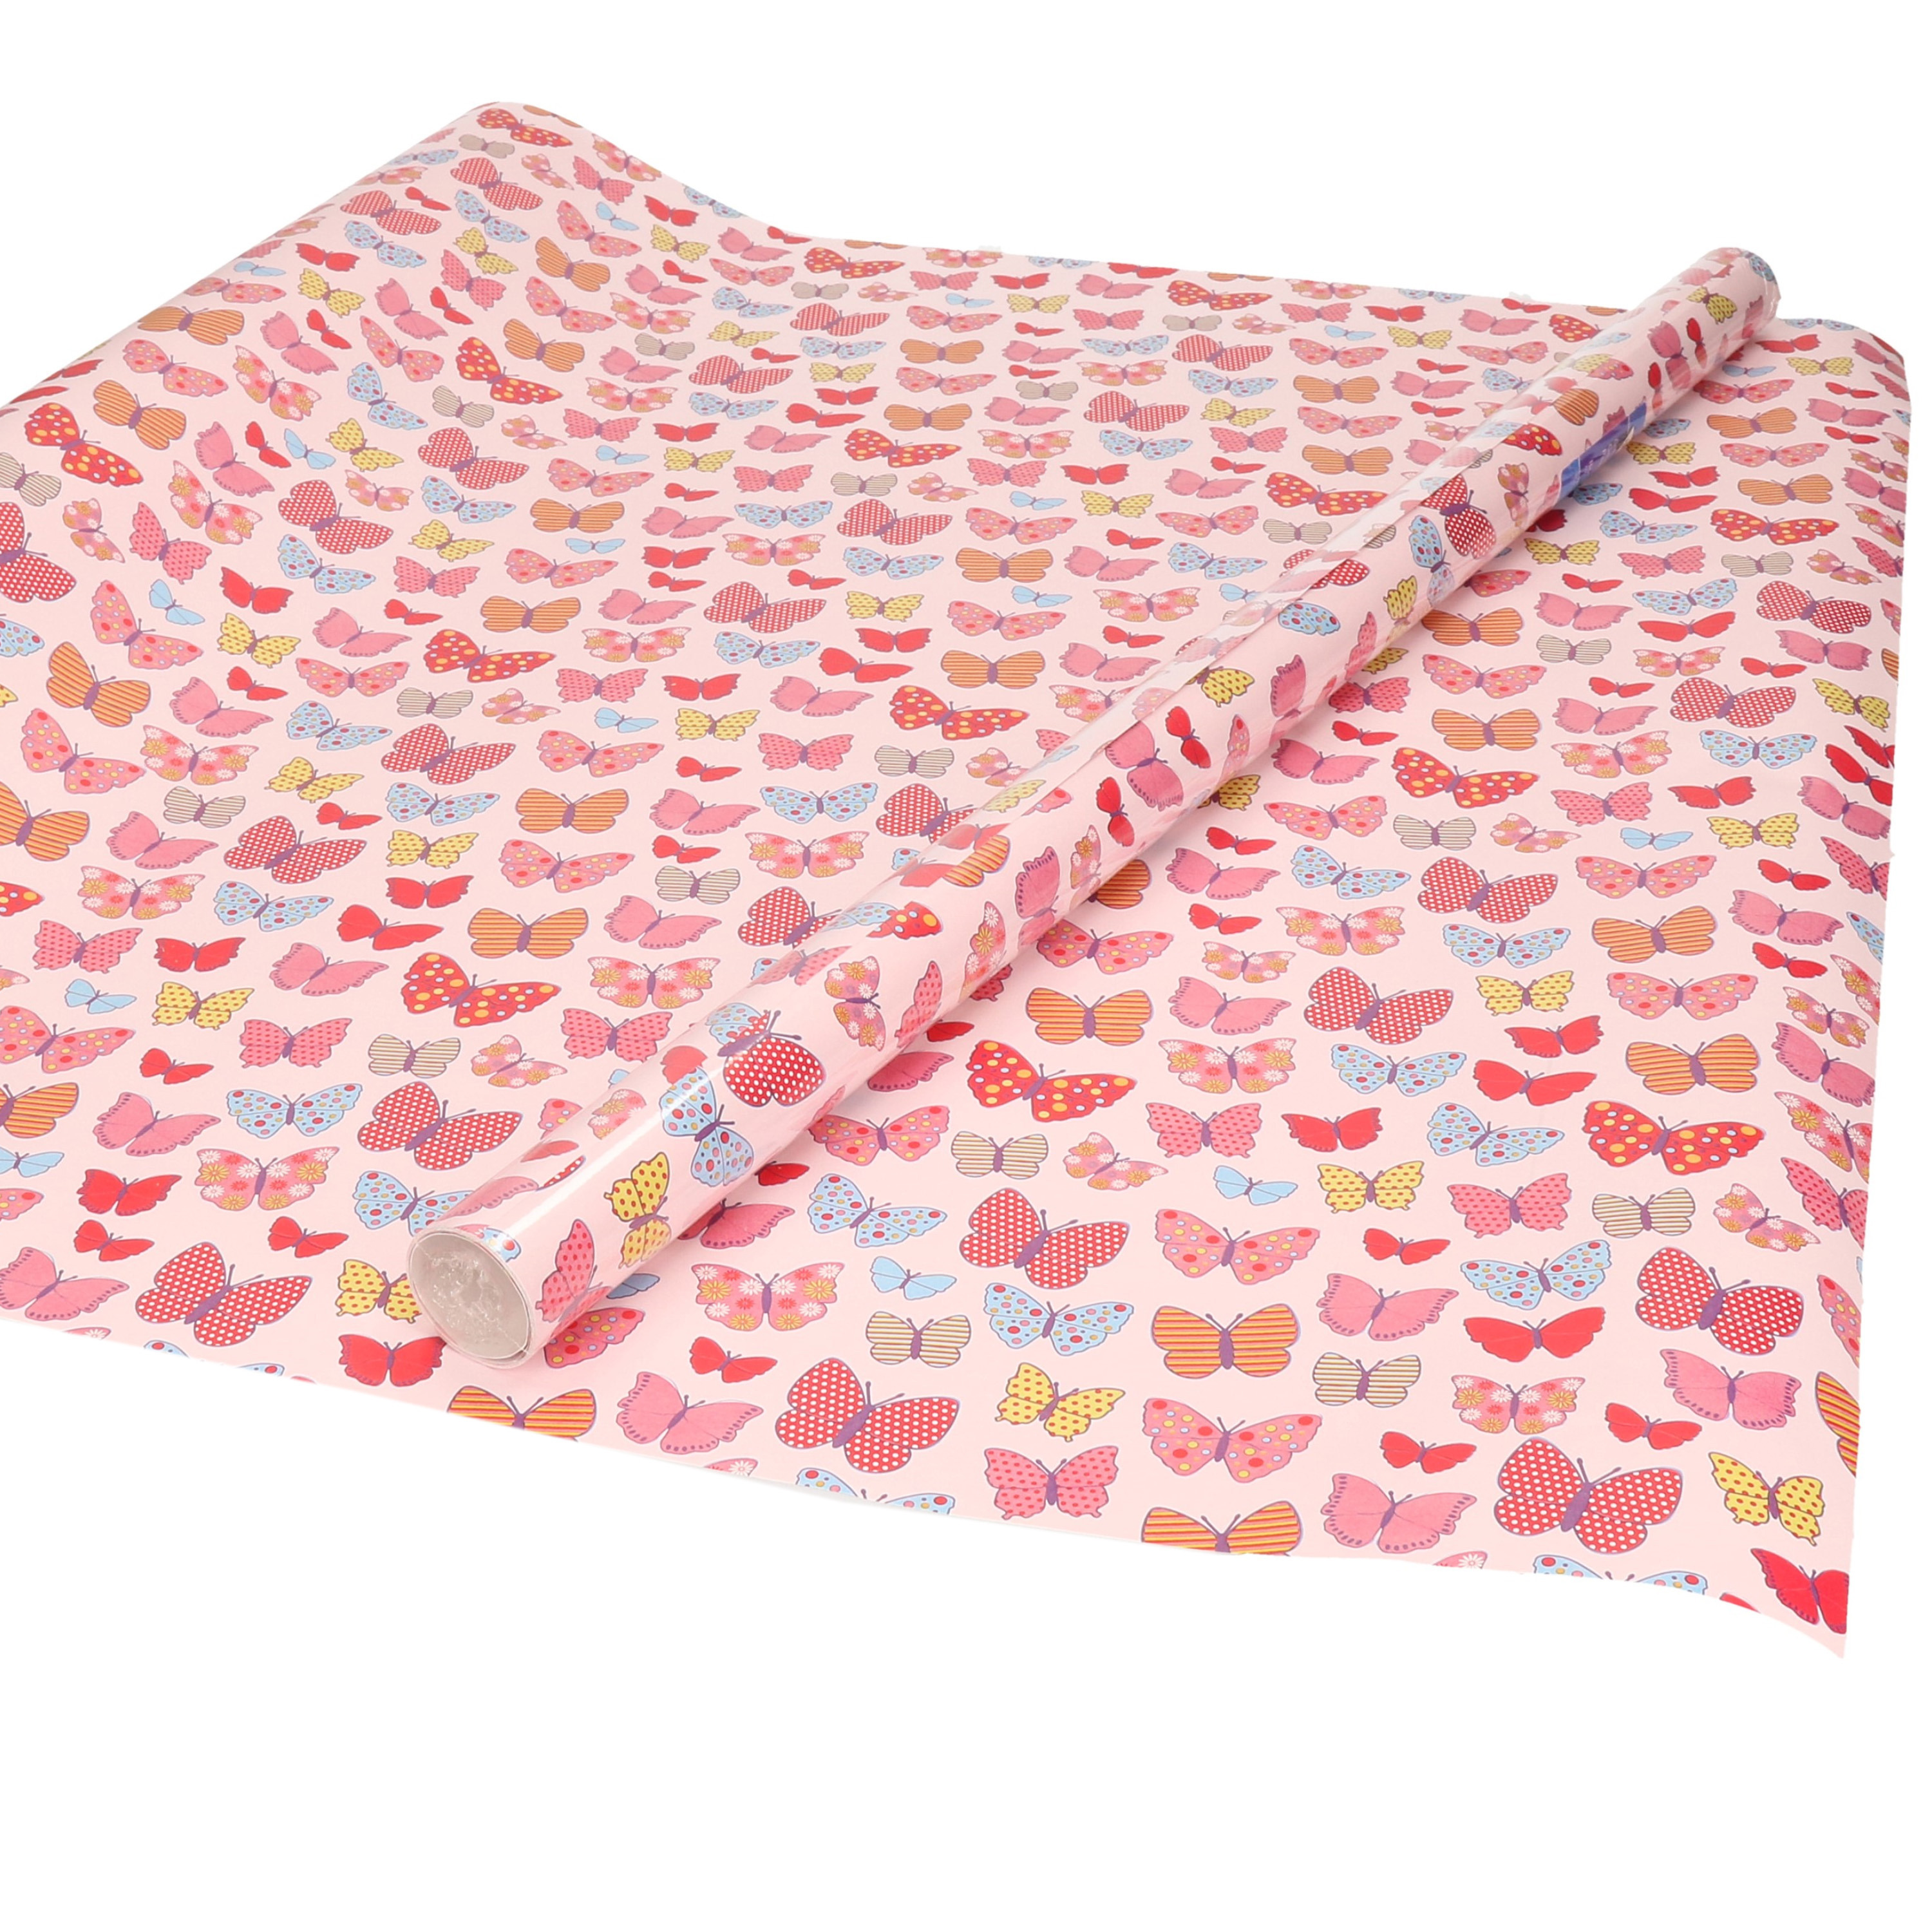 Inpakpapier/cadeaupapier roze met gekleurde vlinders design 200 x 70 cm